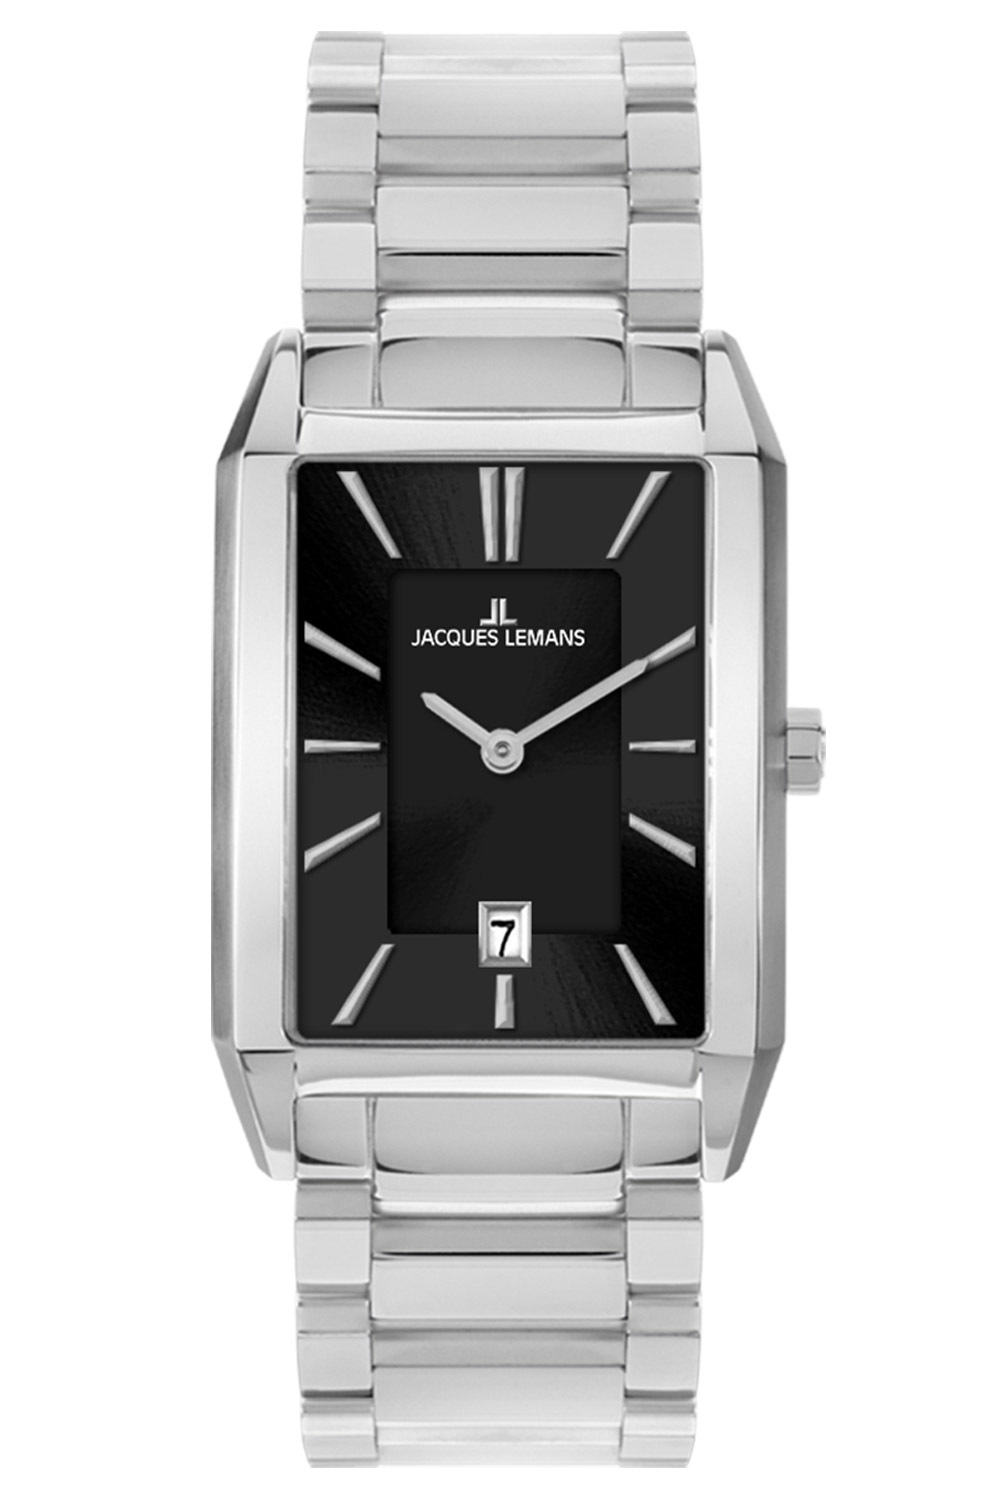 Jacques Lemans Men's Quartz Watch Stainless Steel 1-2160H • uhrcenter